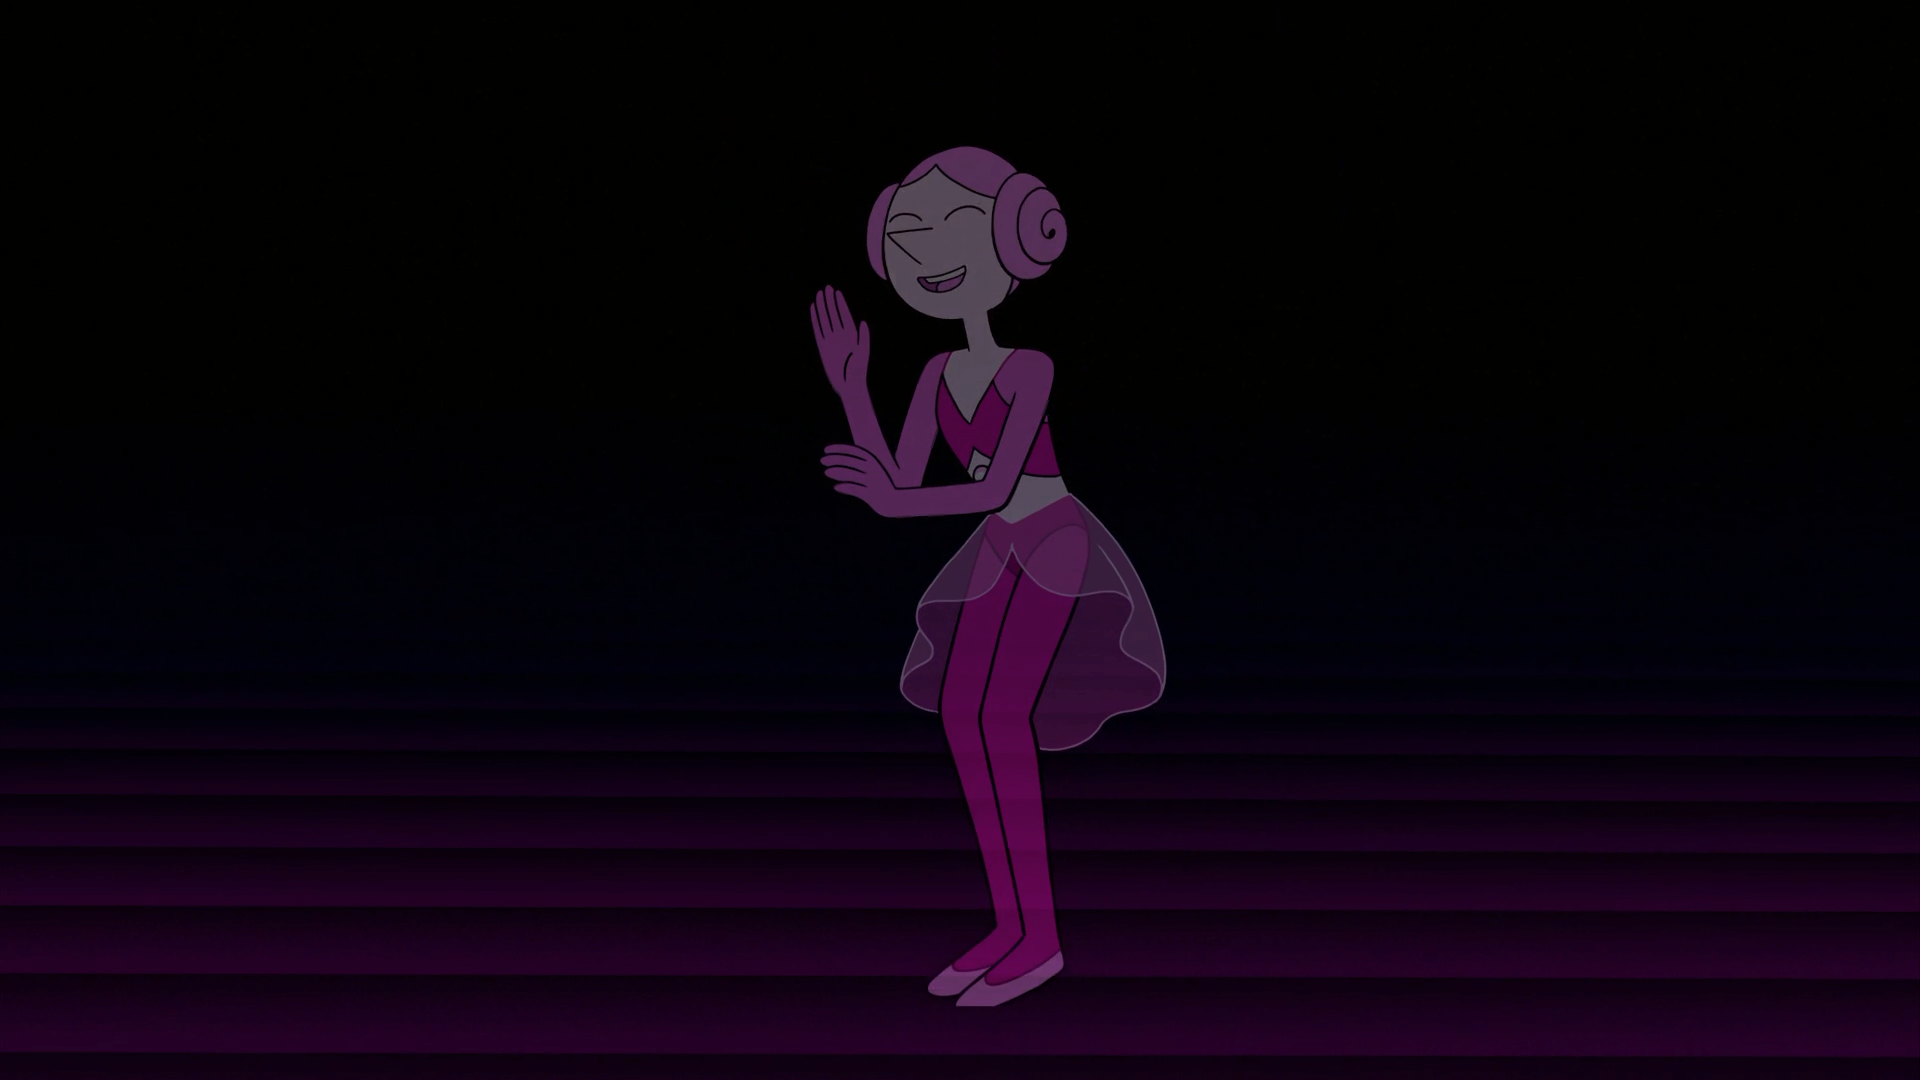 Pink Pearl là một nhân vật quan trọng trong series hoạt hình Steven Universe, là bạn đồng hành và người hộ tống của White Diamond. Với nụ cười tươi tắn và tính cách đáng yêu, Pink Pearl đã đốn tim không biết bao nhiêu khán giả. Hãy xem hình ảnh Pink Pearl để khám phá thêm về nhân vật này.